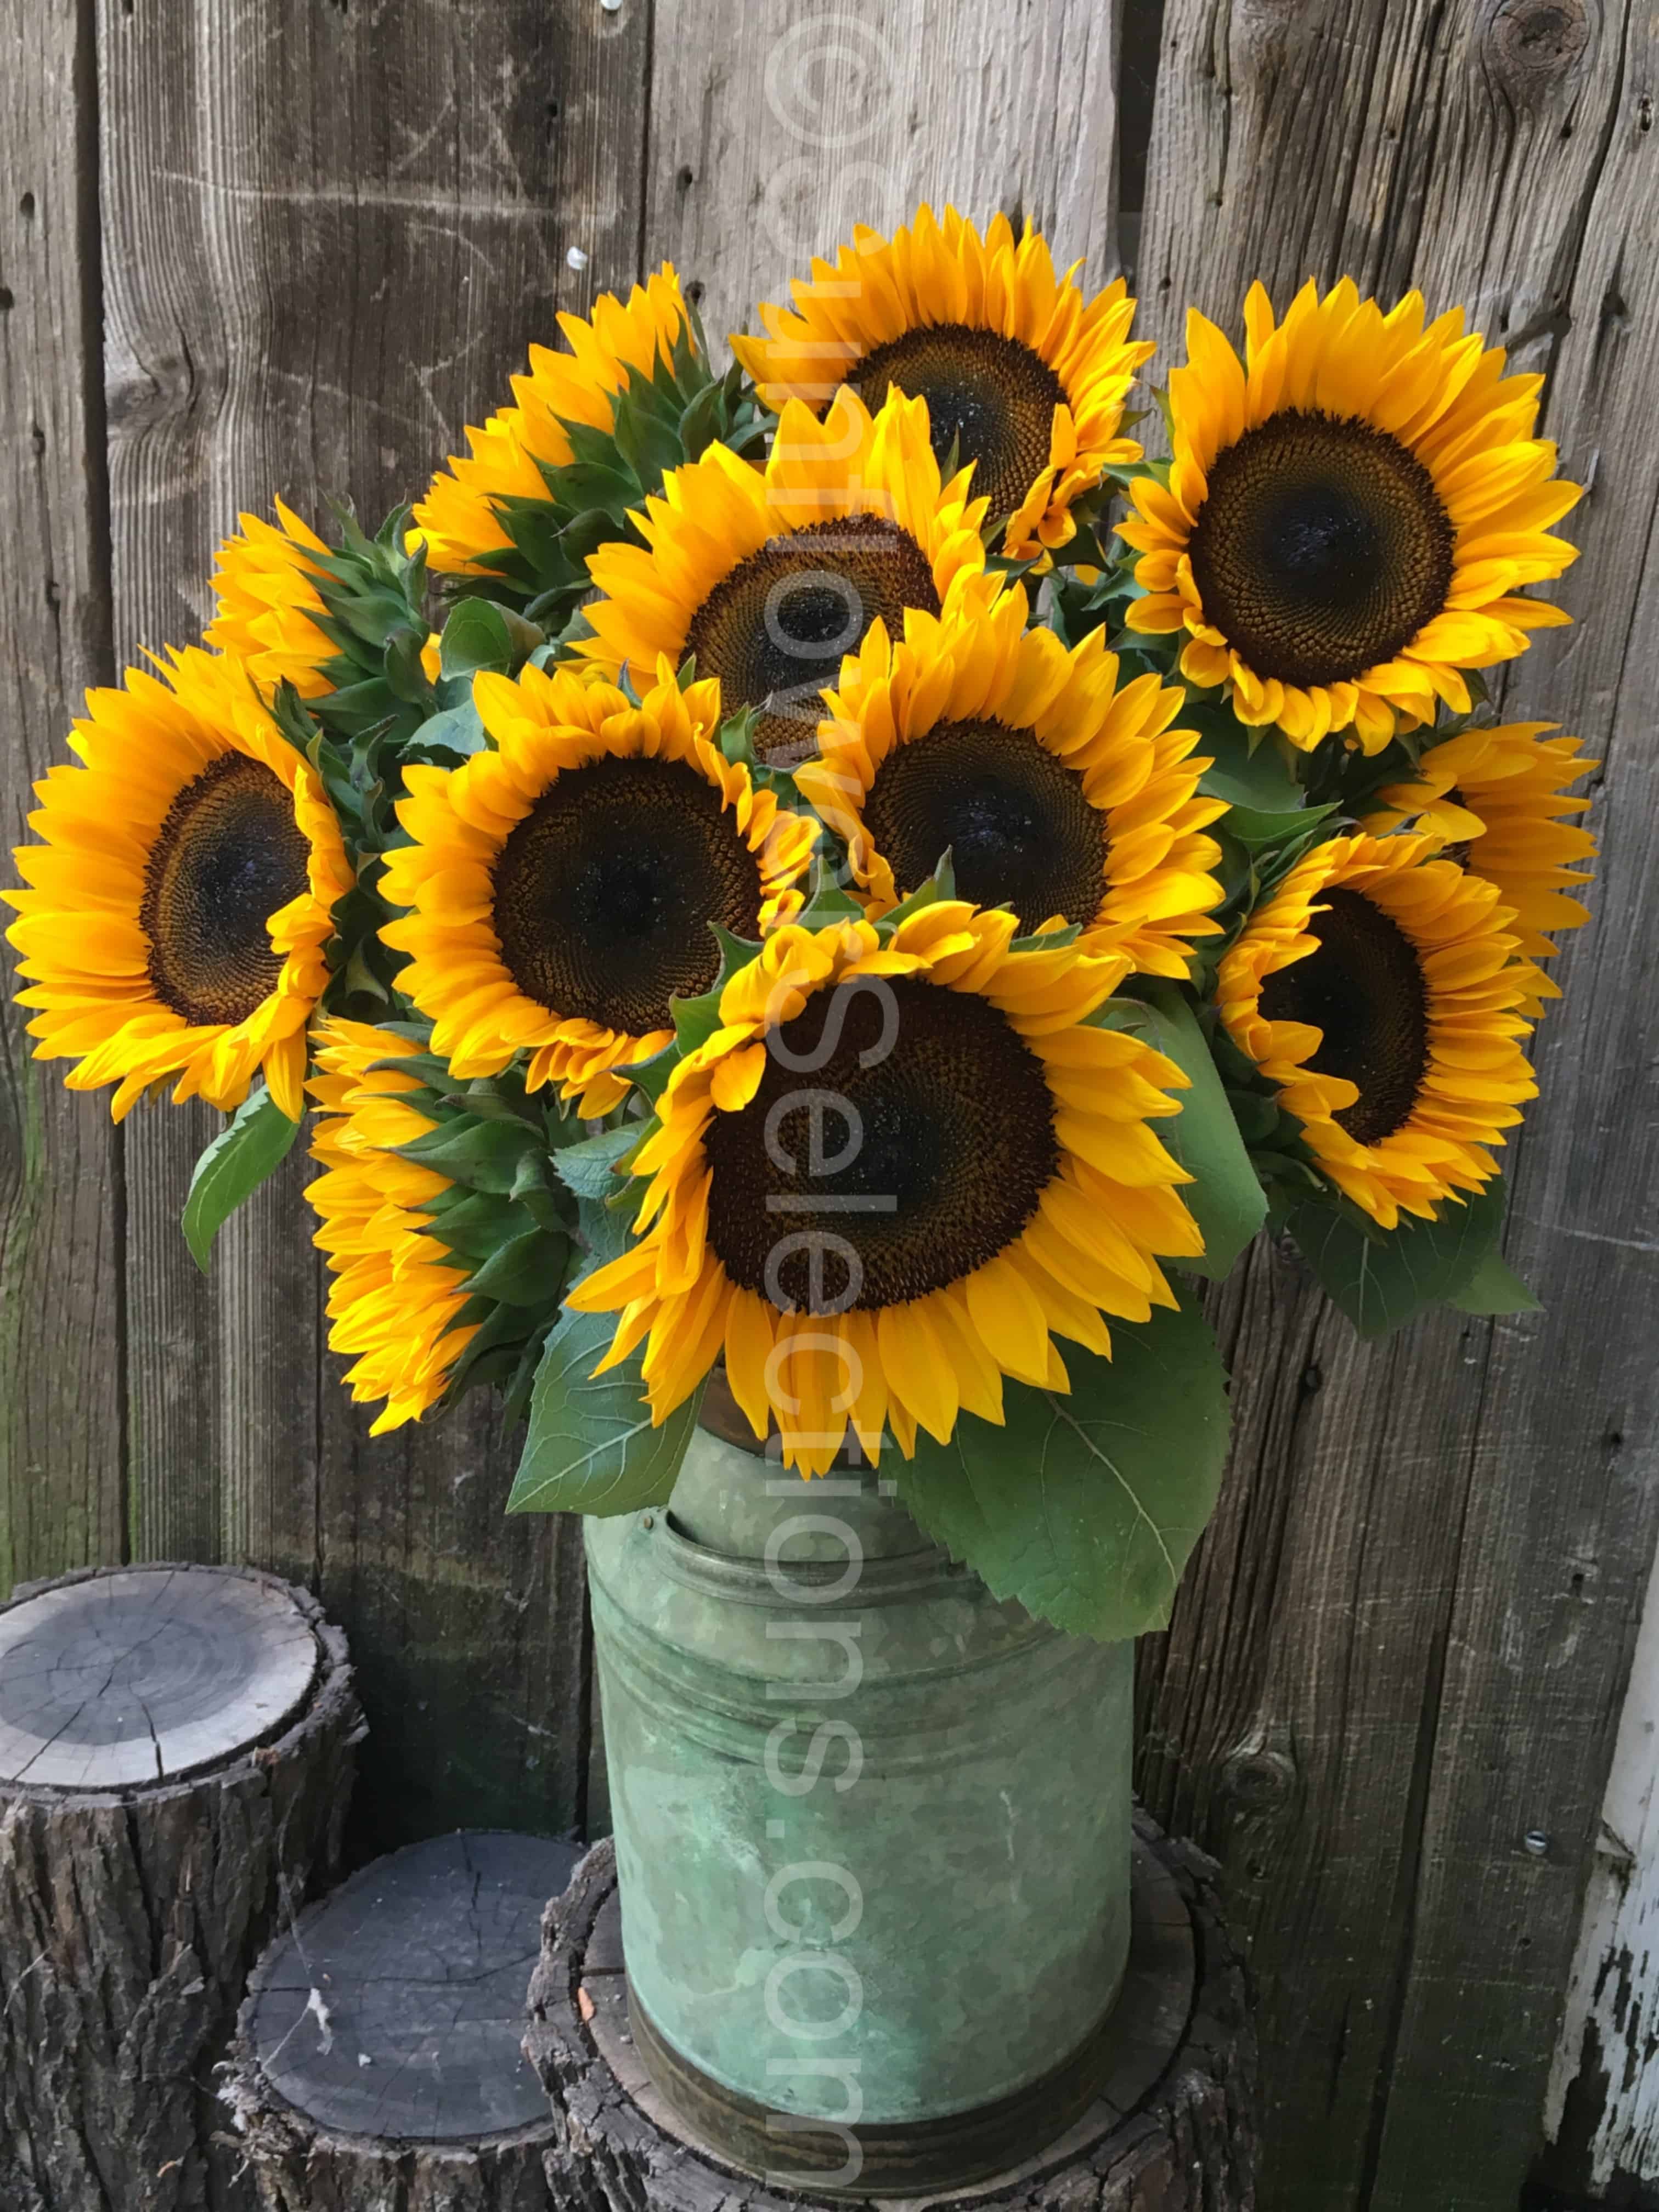 Grow Sunflowers - ProCut, garden ornamentals - Sunflowerselections.com